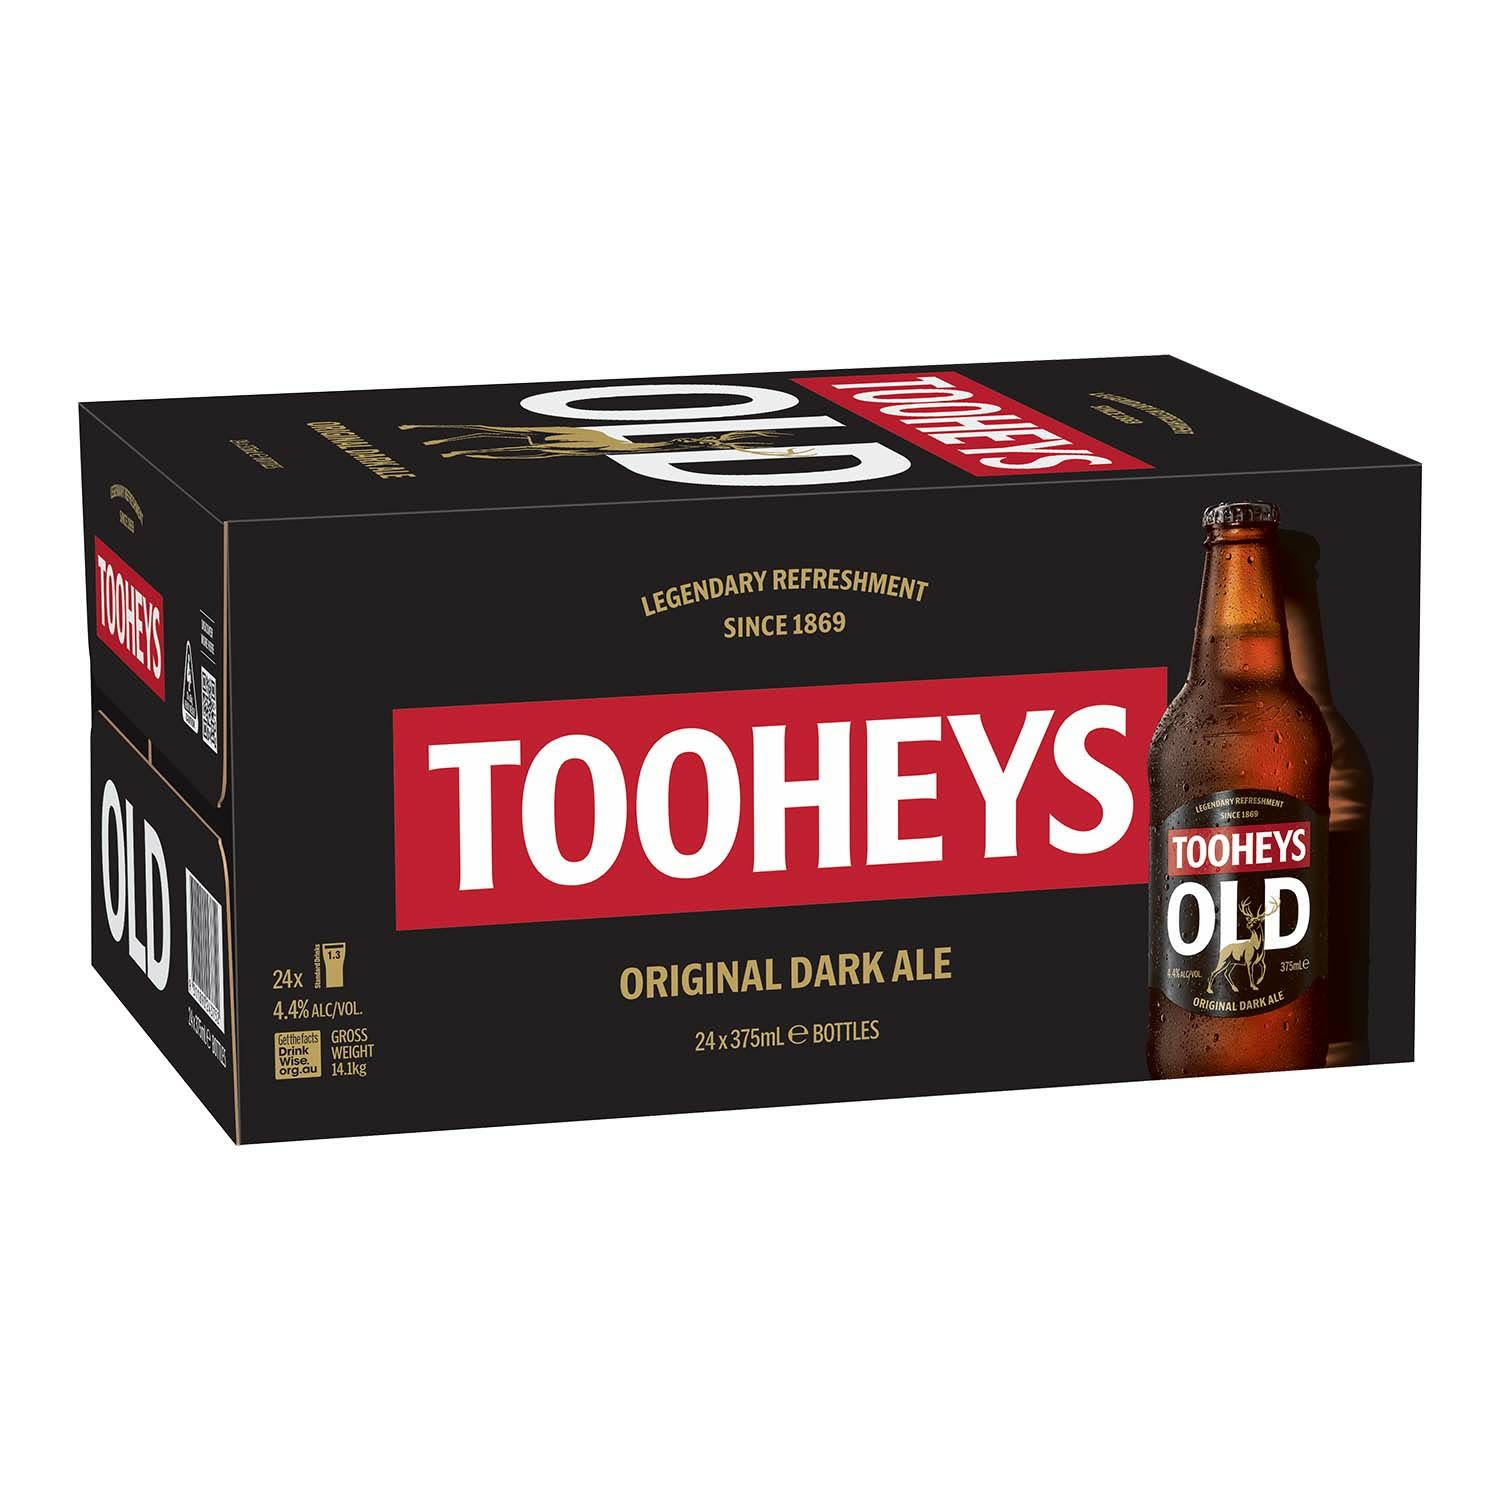 Tooheys Old Bottle 375mL 24 Pack